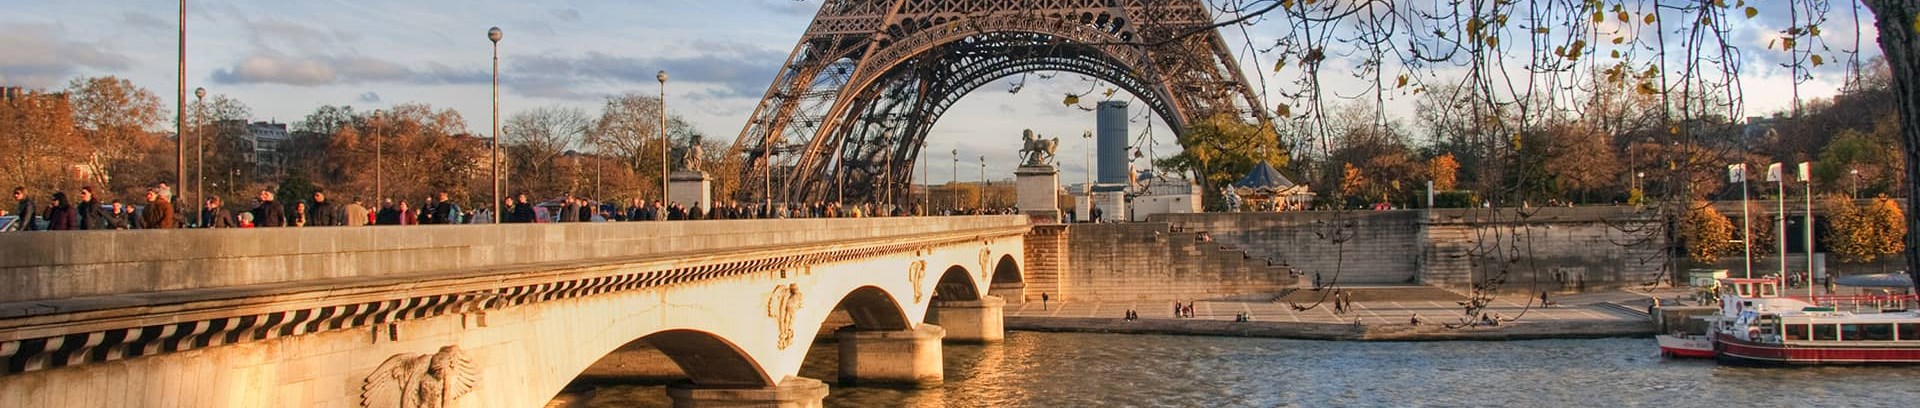 Billede fra Paris med eiffeltårnet i baggrunden 